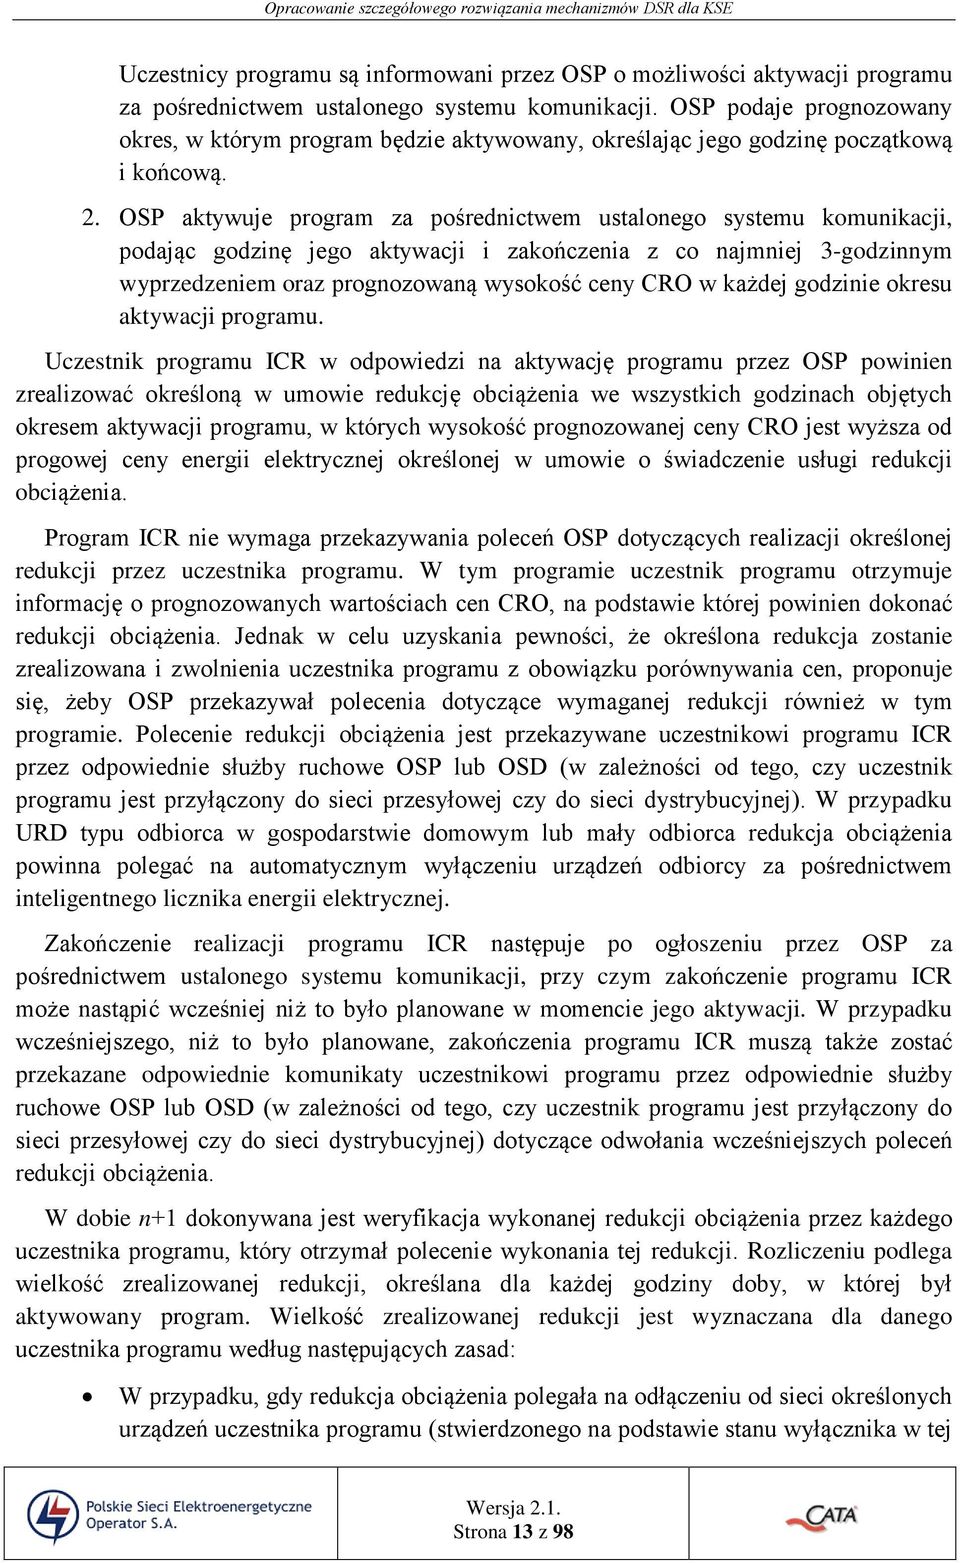 OSP aktywuje program za pośrednictwem ustalonego systemu komunikacji, podając godzinę jego aktywacji i zakończenia z co najmniej 3-godzinnym wyprzedzeniem oraz prognozowaną wysokość ceny CRO w każdej